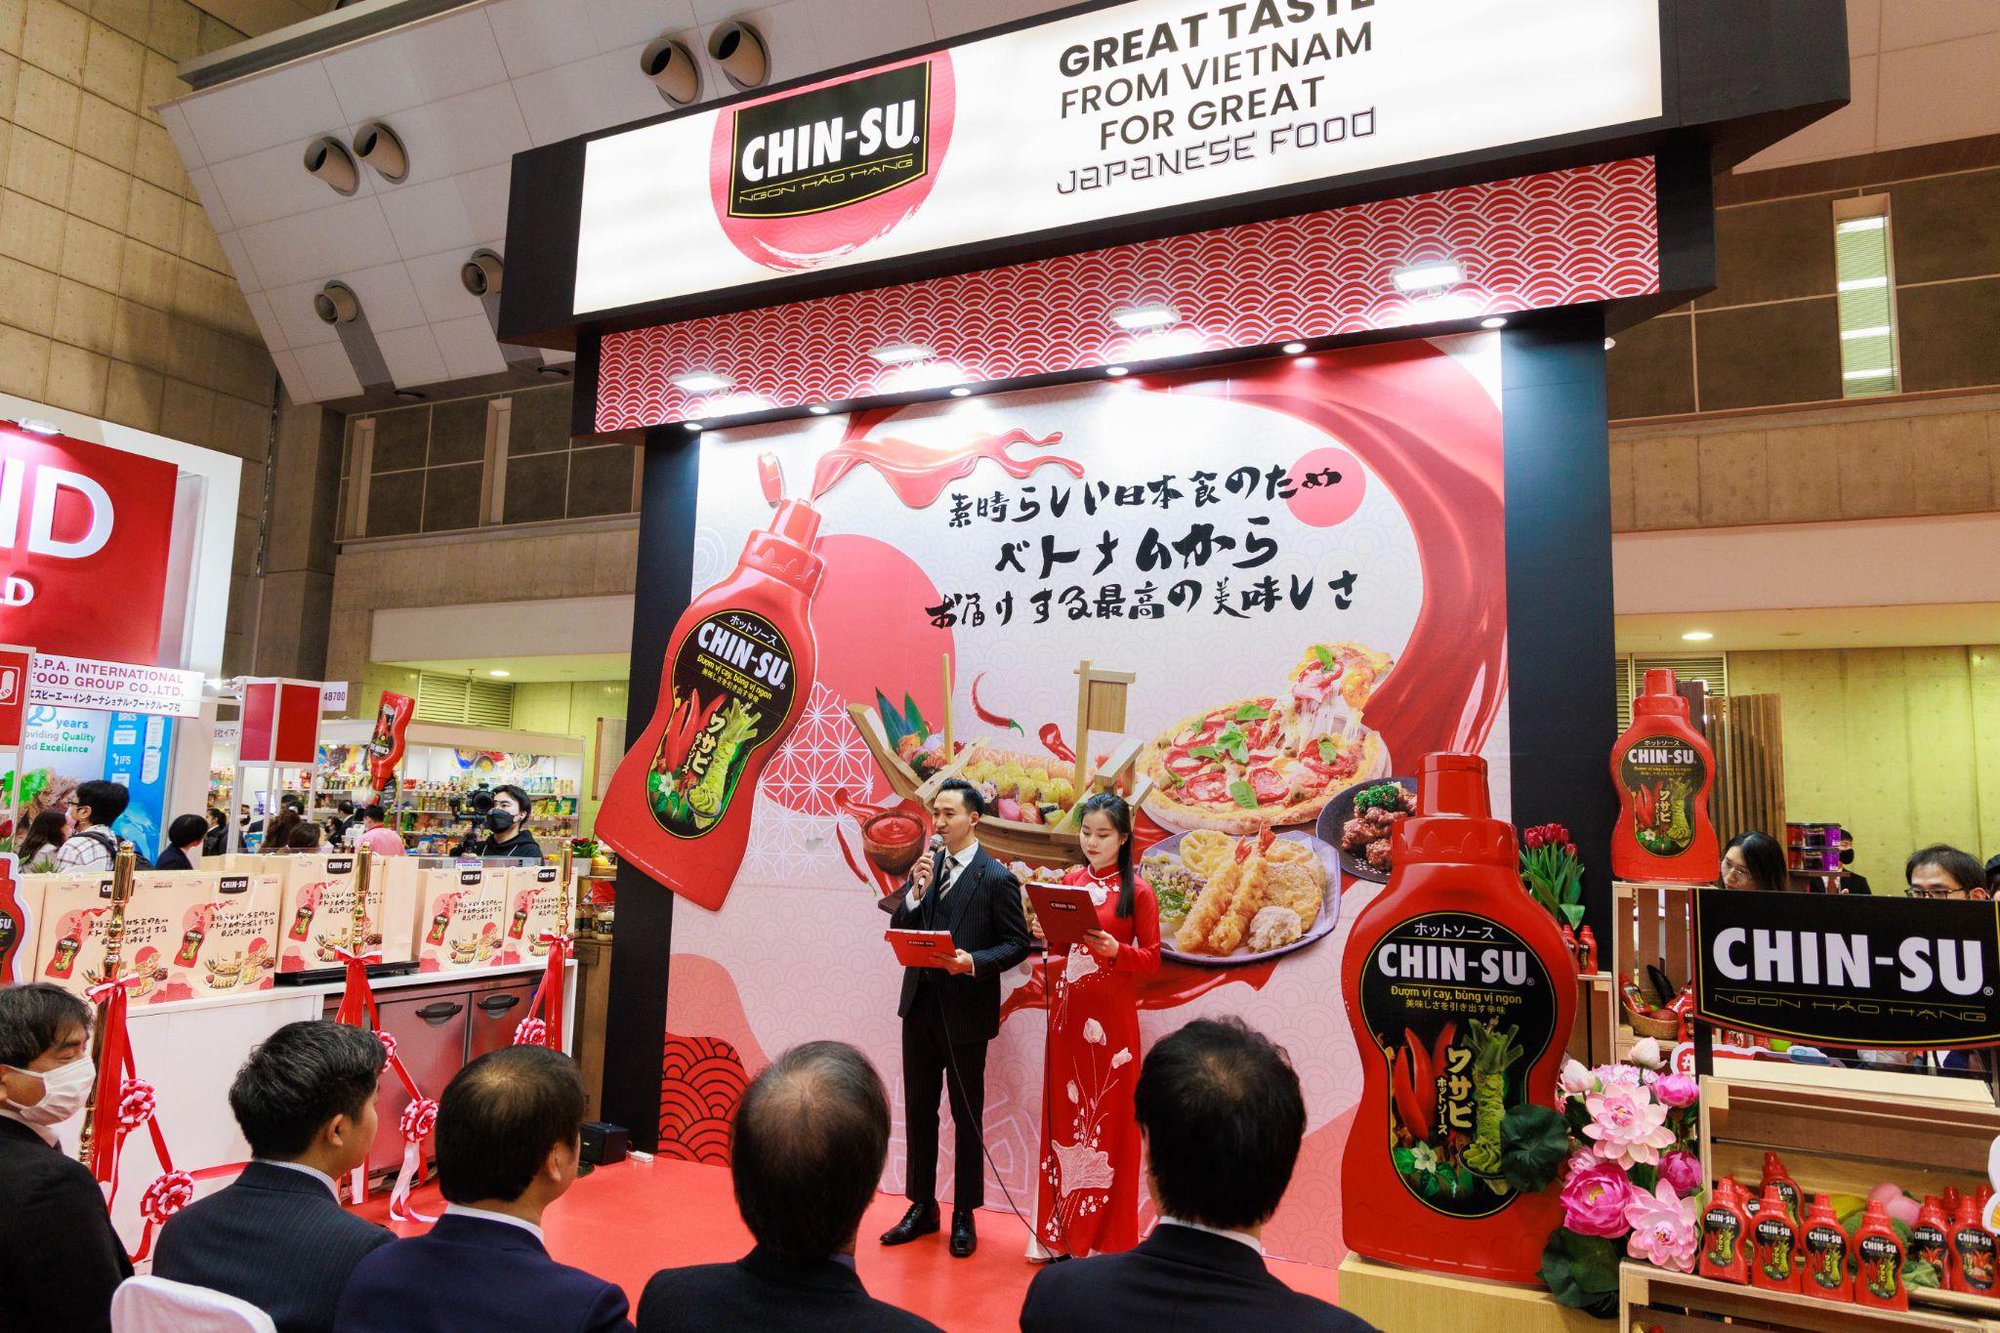 Tương ớt Chin-su gây ấn tượng mạnh tại Nhật Bản, ra mắt 5 hương vị mới - Ảnh 1.